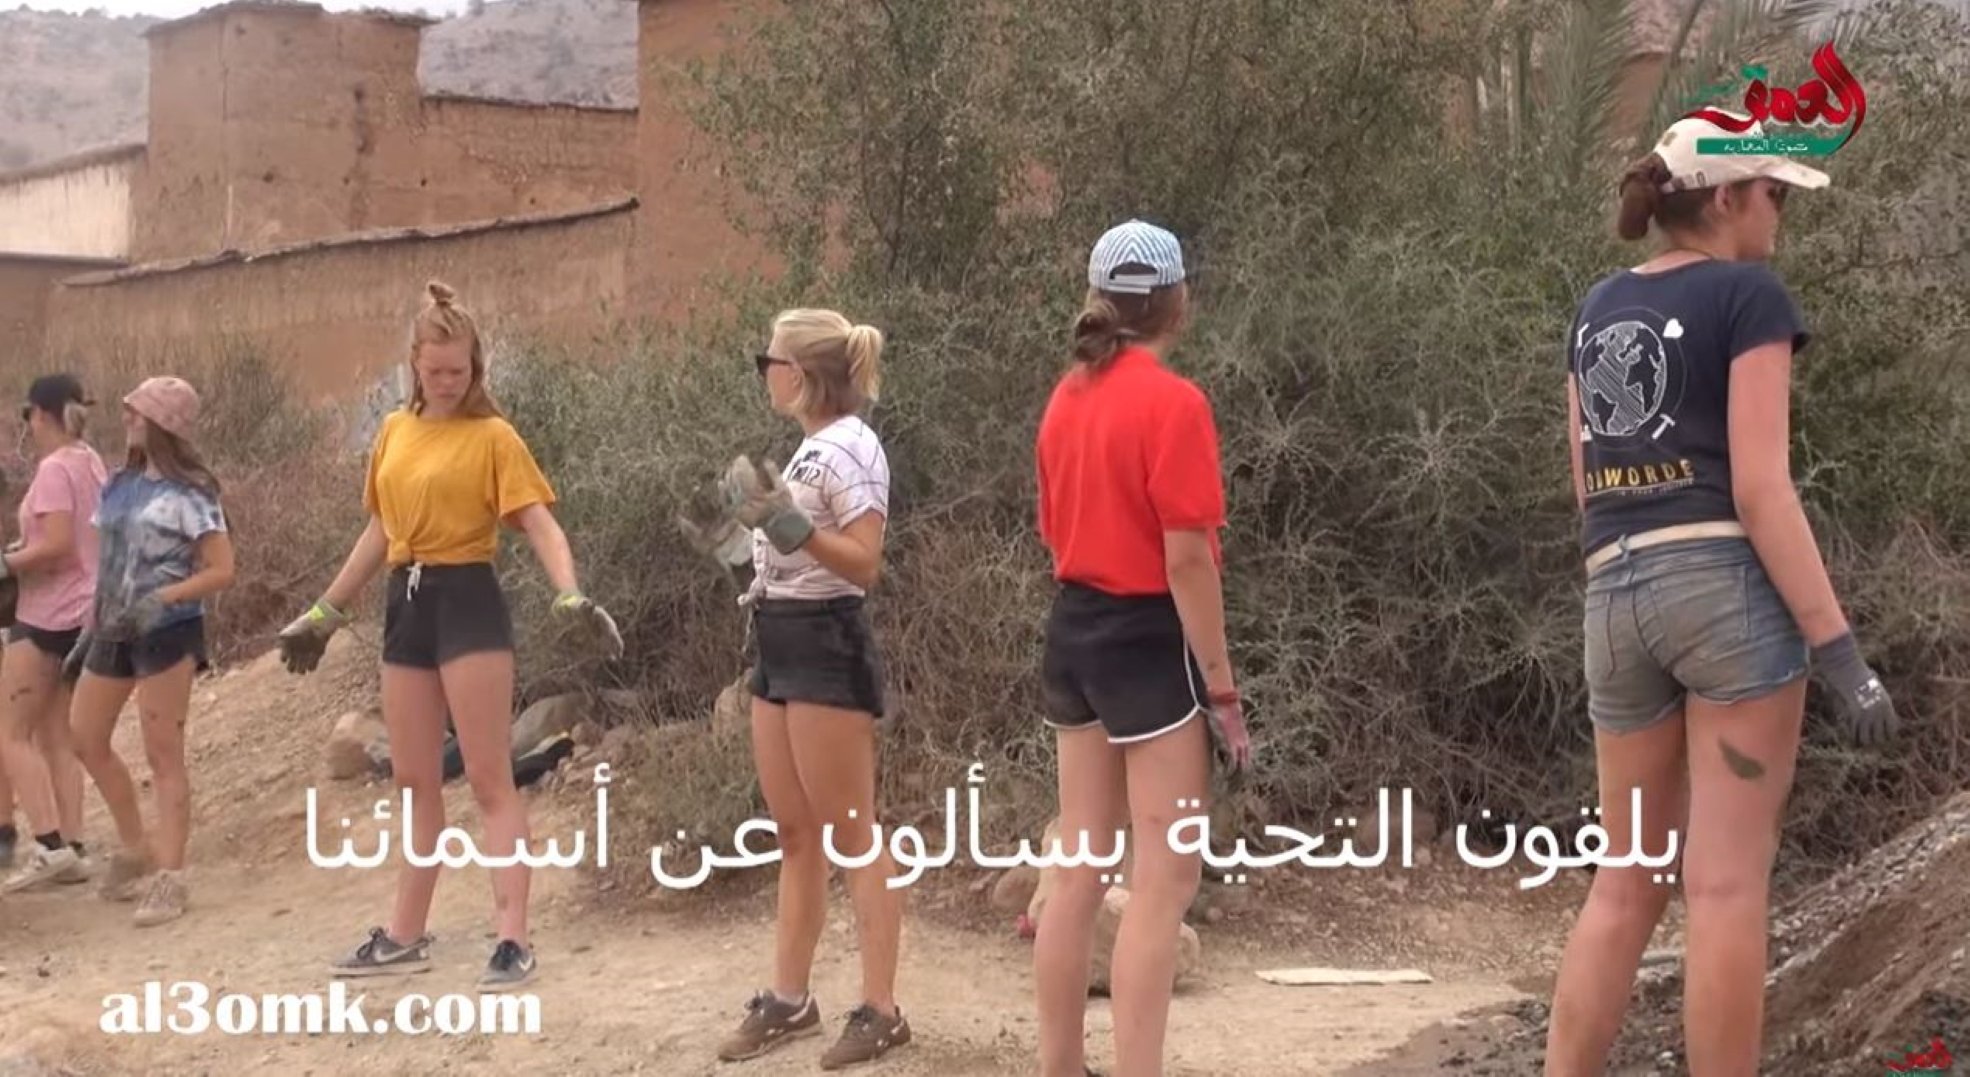 Impresentables amenazas de muerte a unas voluntarias belgas en Marruecos por llevar 'shorts'